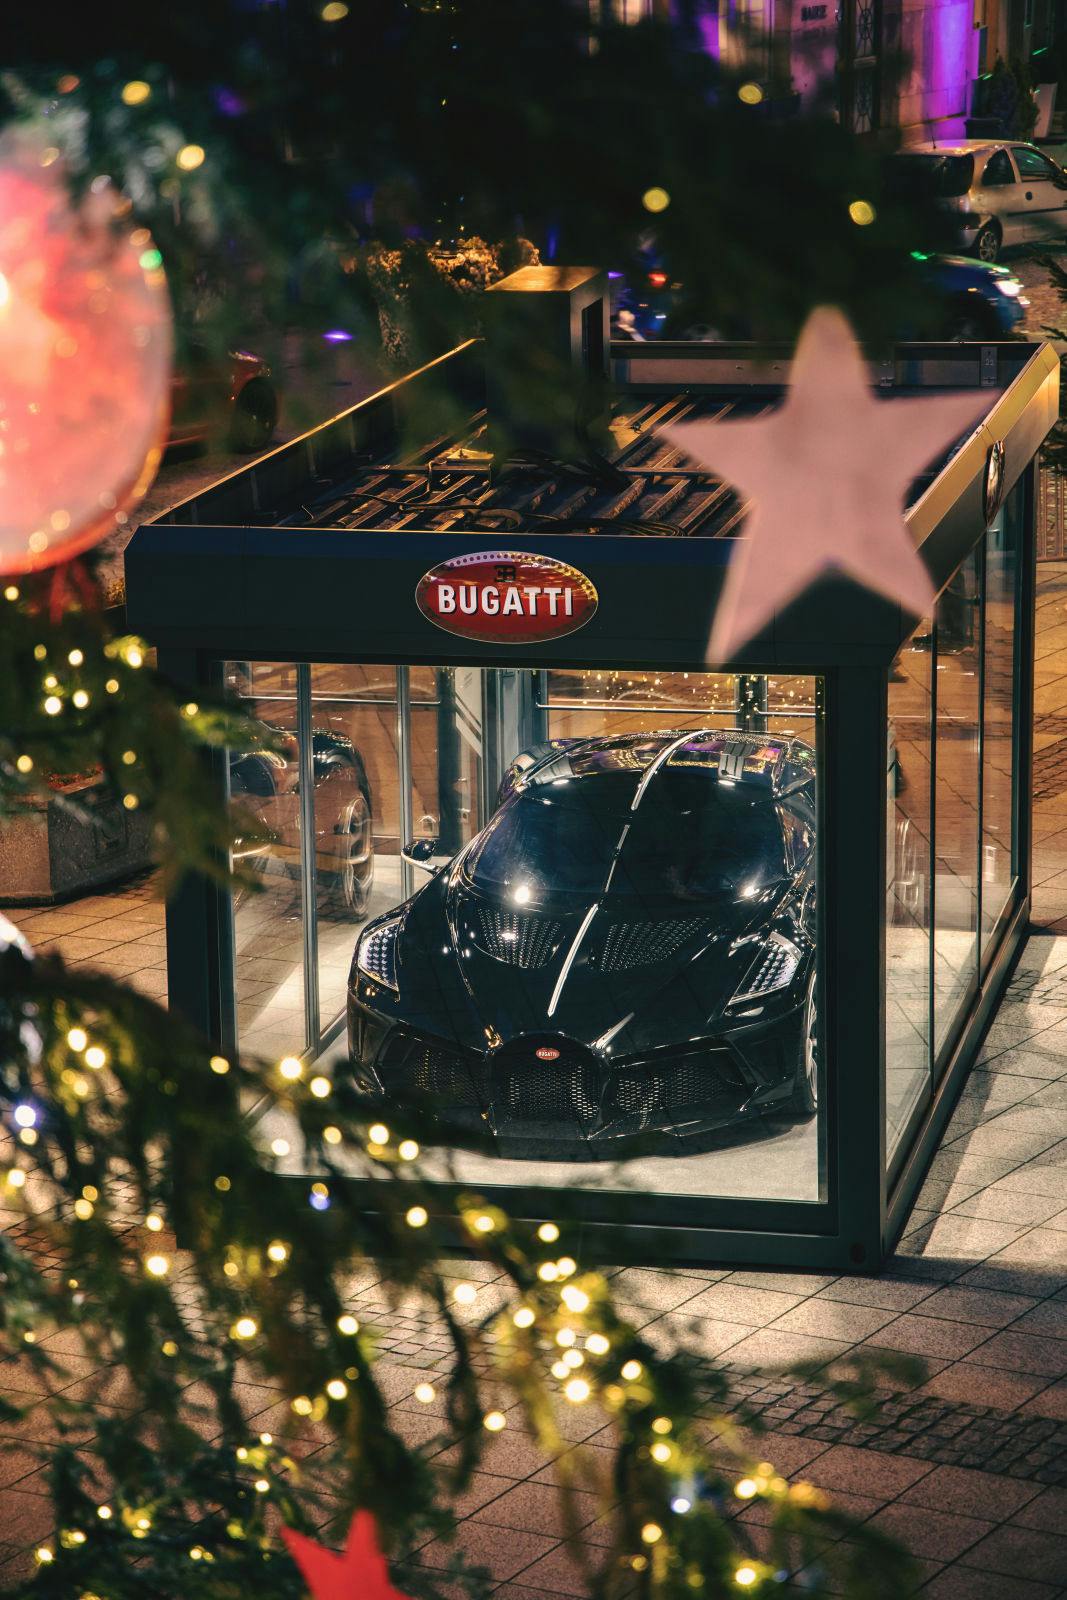 Au lieu du marché de Noël, cette année, la Bugatti La Voiture Noire est exposée sur la Place de l’Hôtel de Ville.